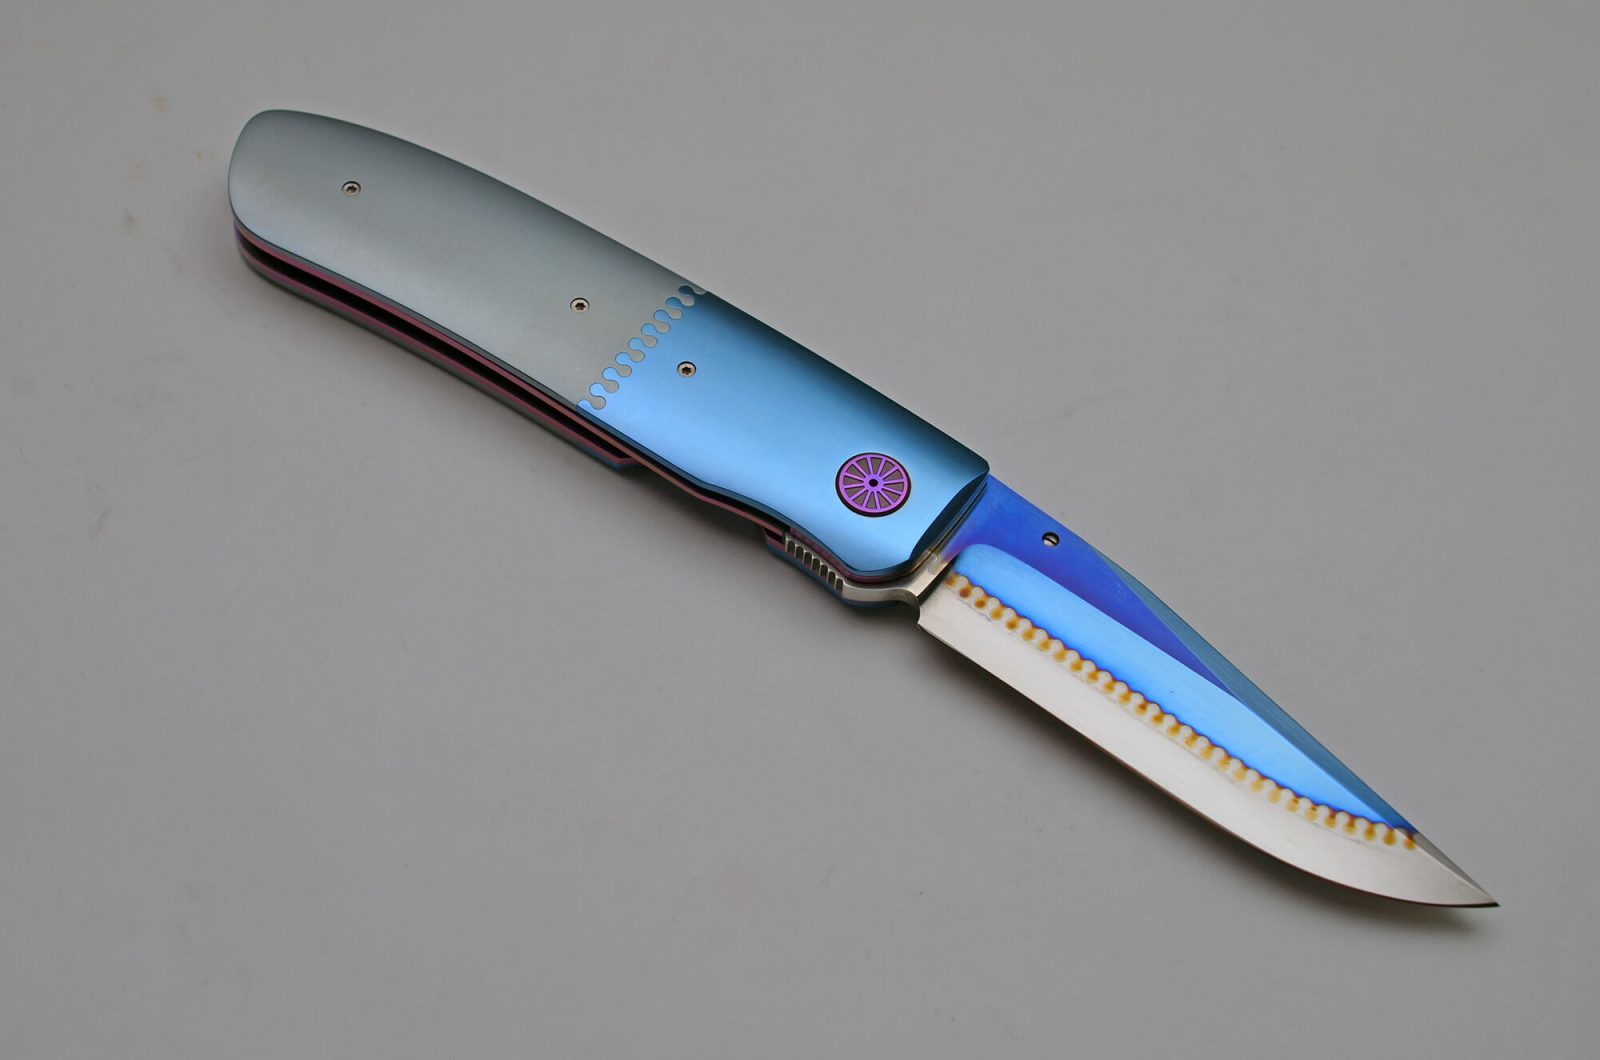 custom pocket knives